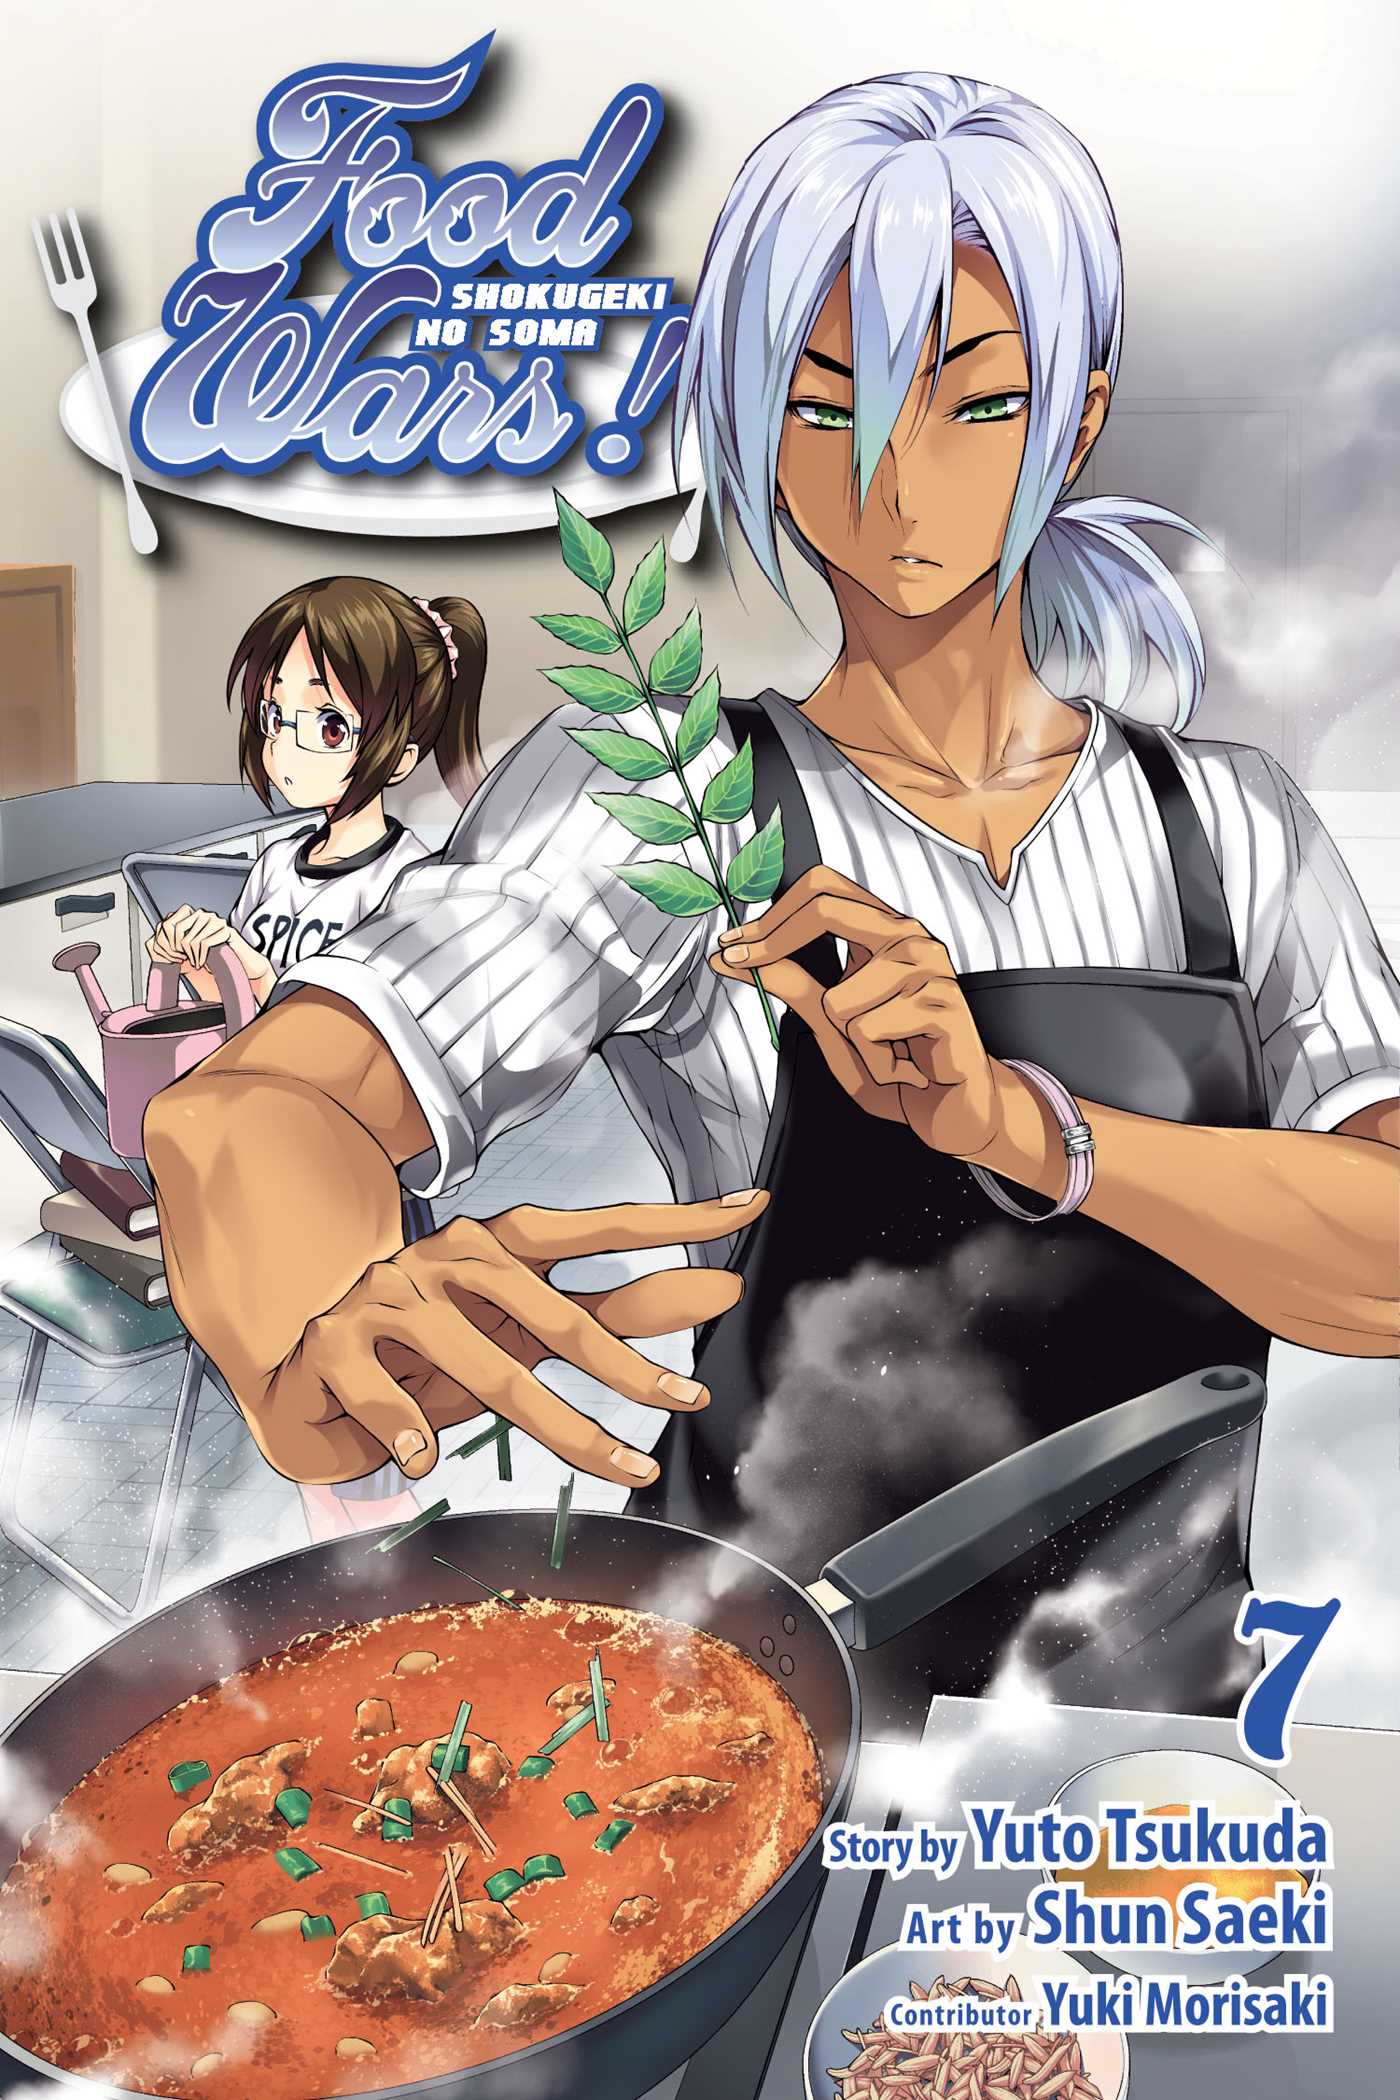 Food Wars!: Shokugeki no Soma Vol. 7 | Tsukuda, Yuto (Auteur) | Saeki, Shun (Illustrateur)